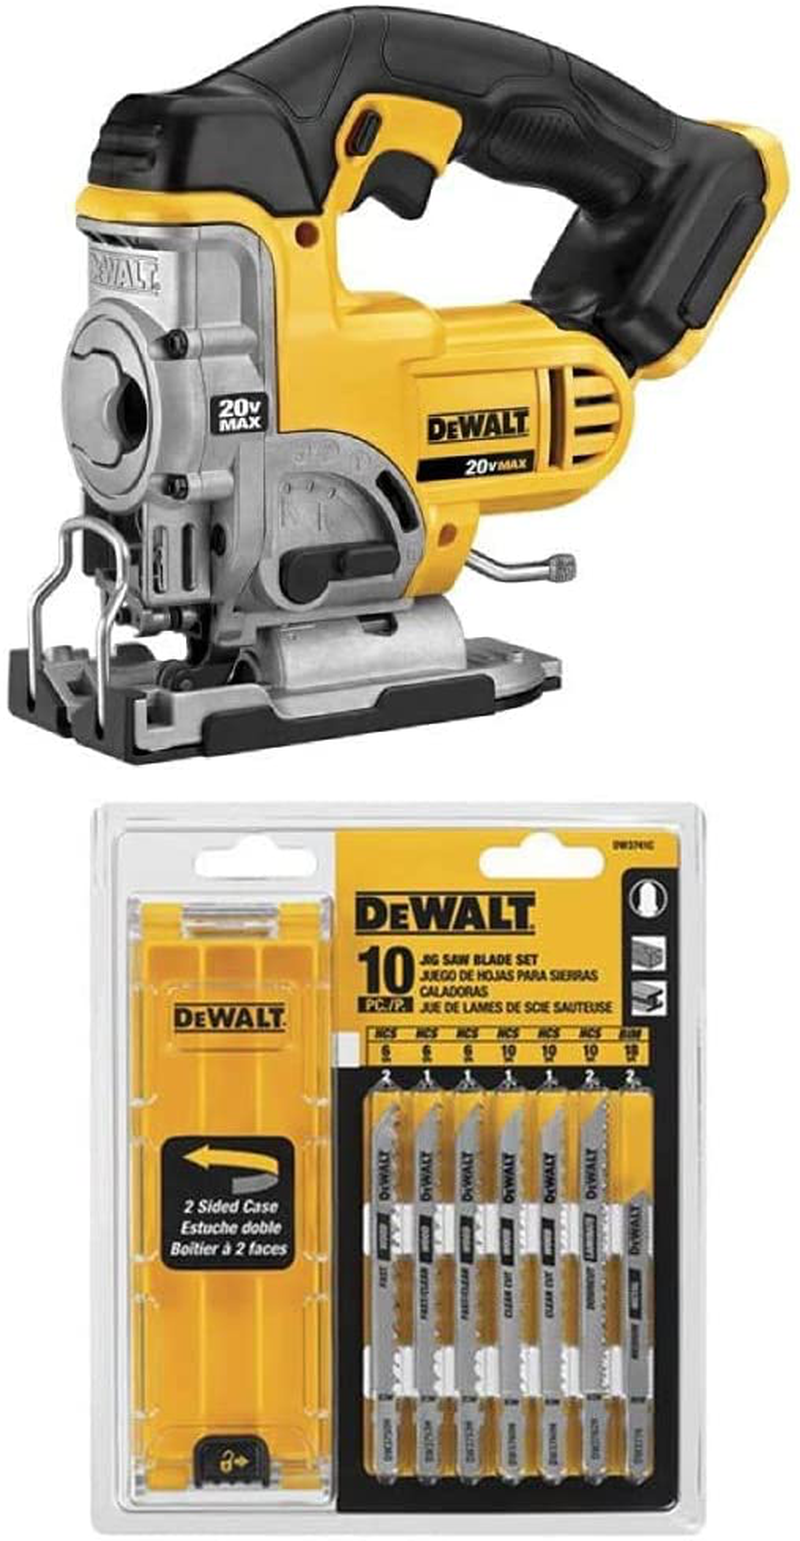 DEWALT 20V MAX Jig Saw, Tool Only (DCS331B)